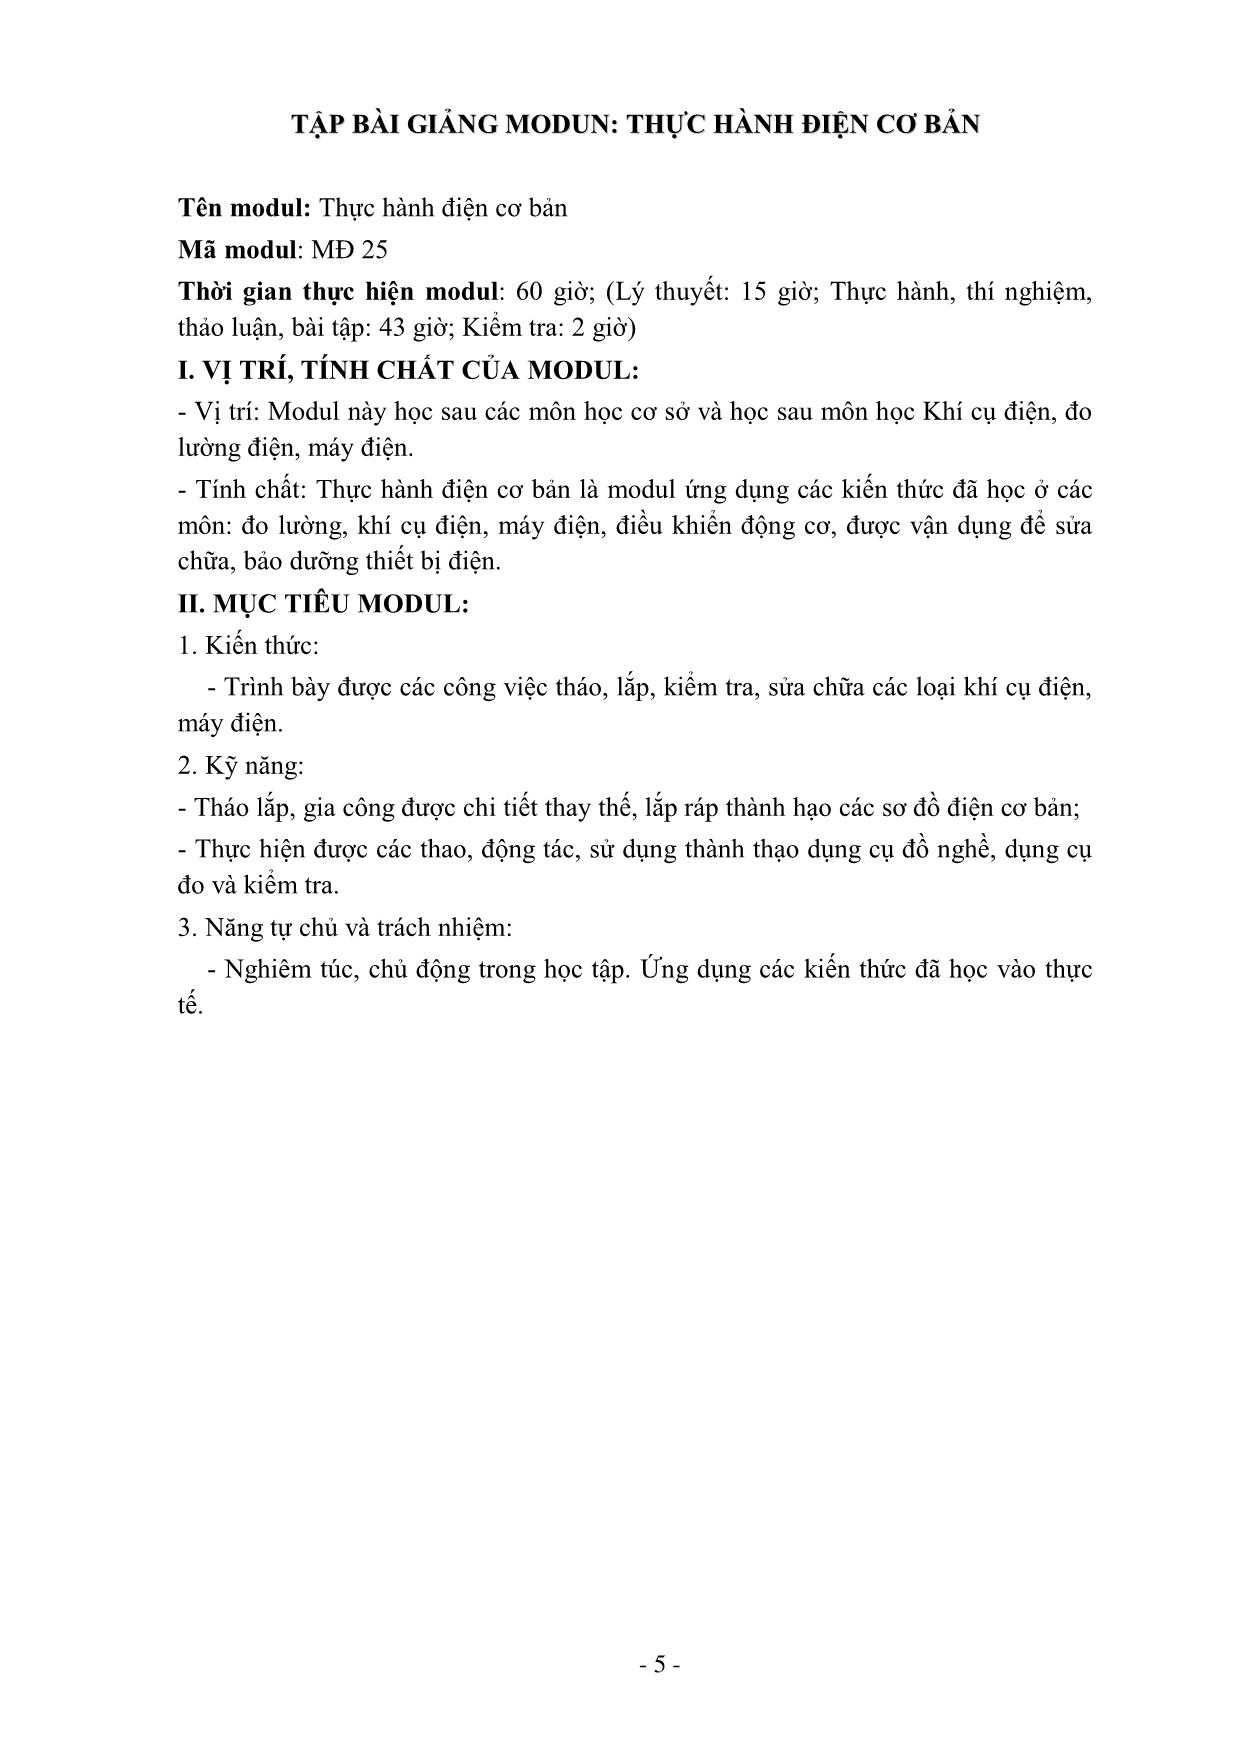 Giáo trình Thực hành điện cơ bản (Mới) trang 5